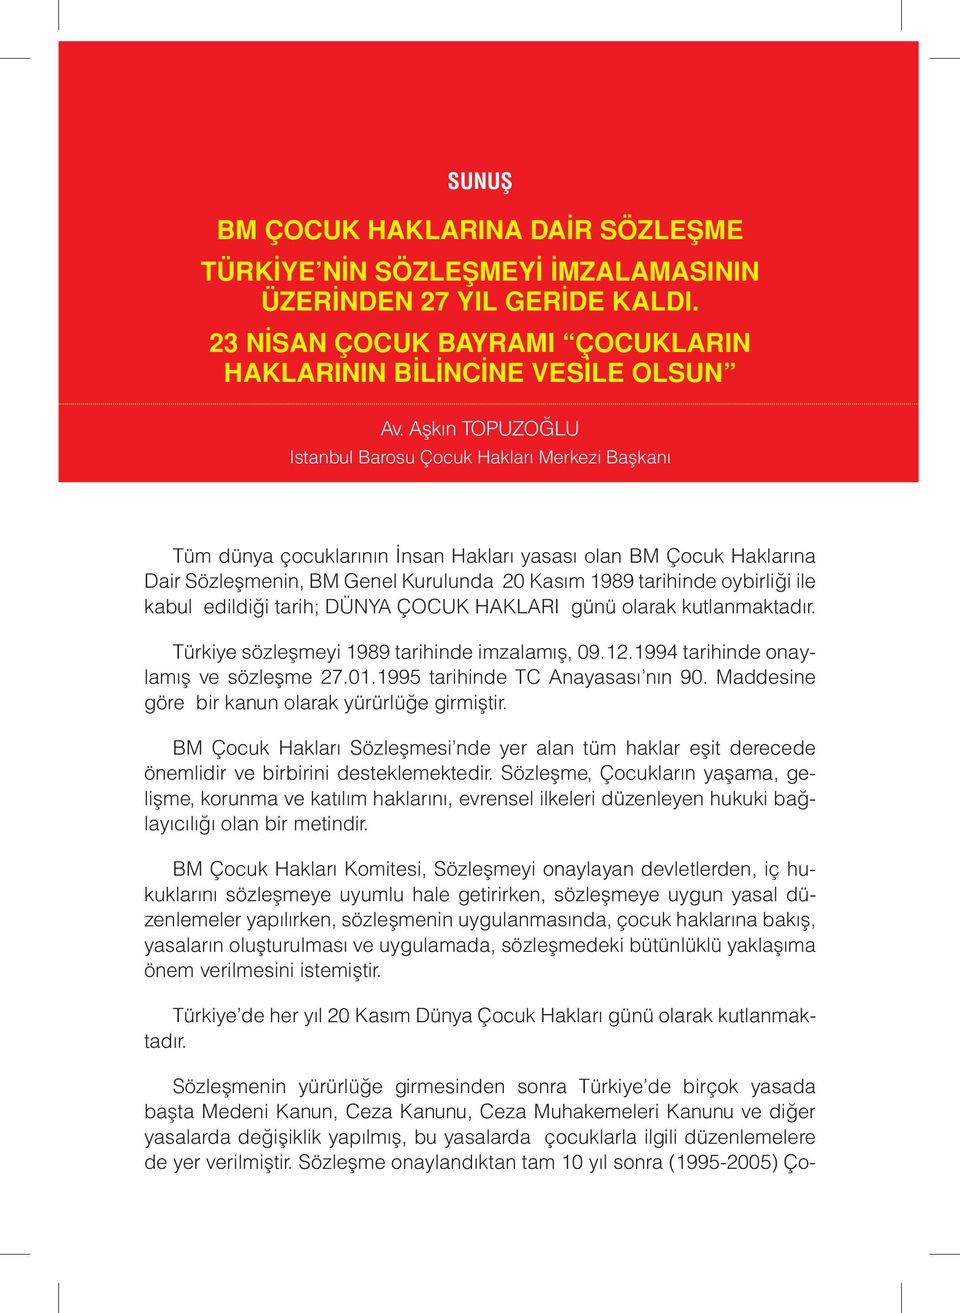 oybirliği ile kabul edildiği tarih; DÜNYA ÇOCUK HAKLARI günü olarak kutlanmaktadır. Türkiye sözleşmeyi 1989 tarihinde imzalamış, 09.12.1994 tarihinde onaylamış ve sözleşme 27.01.